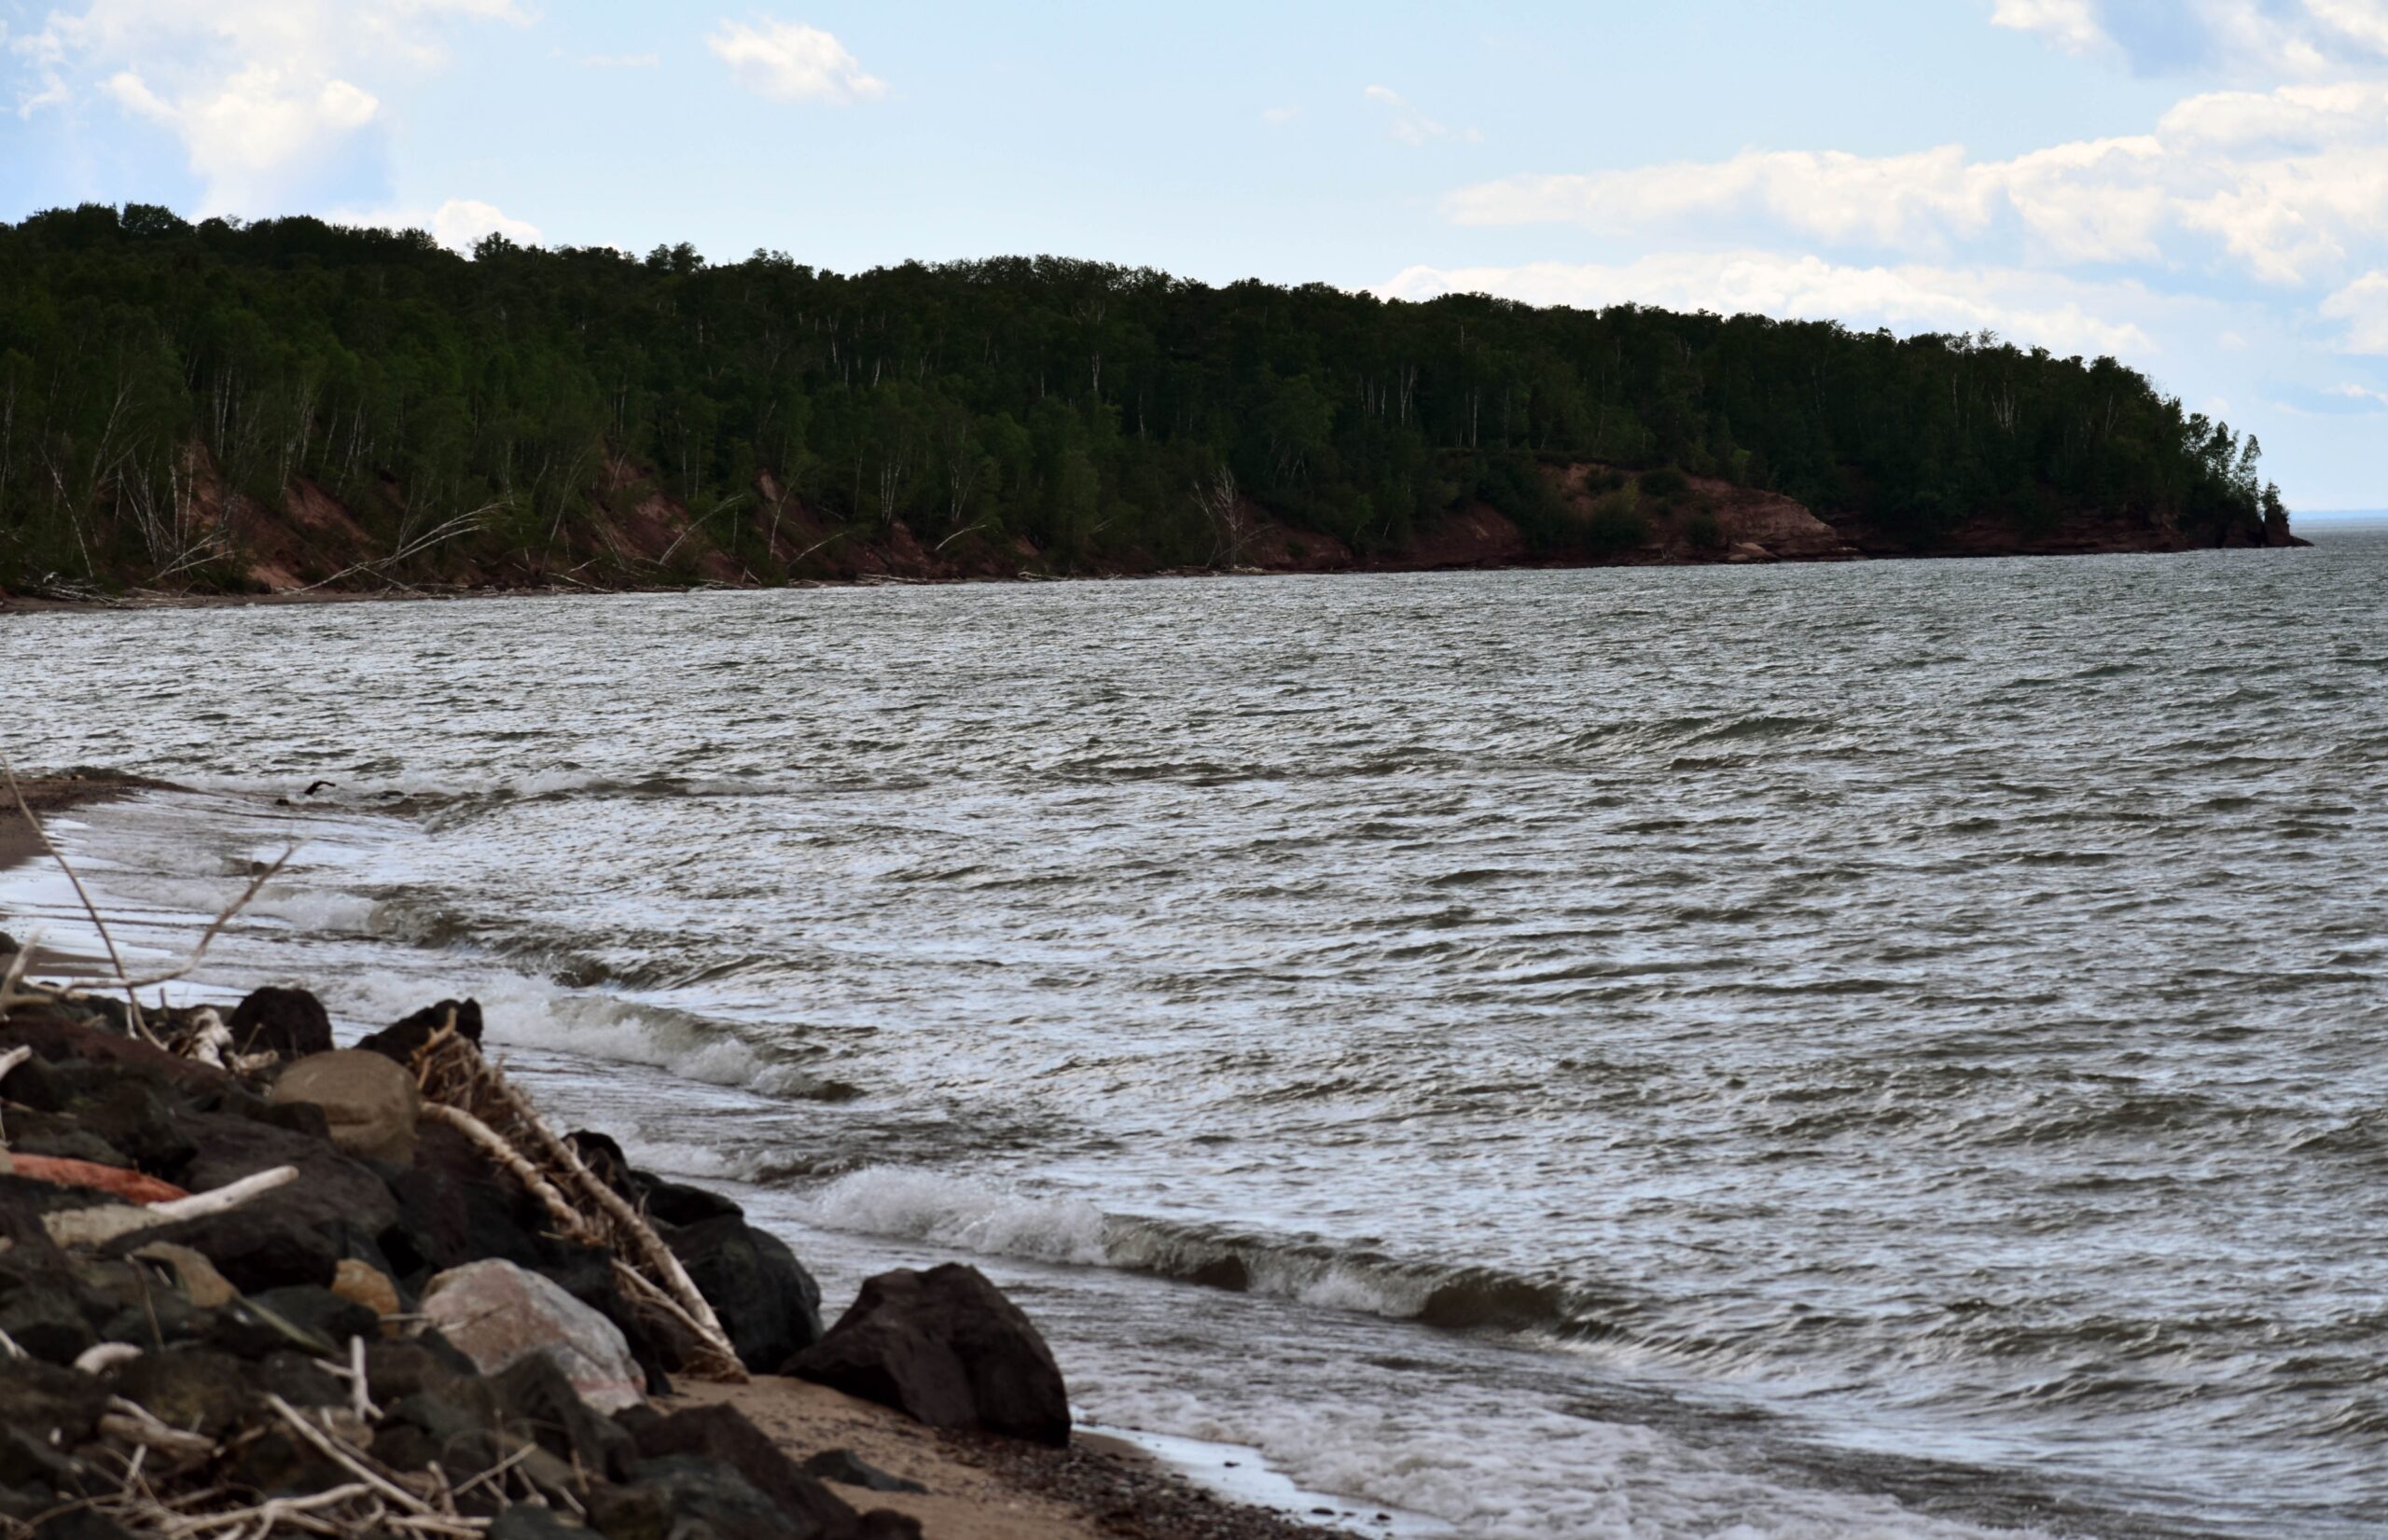 Clay banks are eroding along Lake Superior